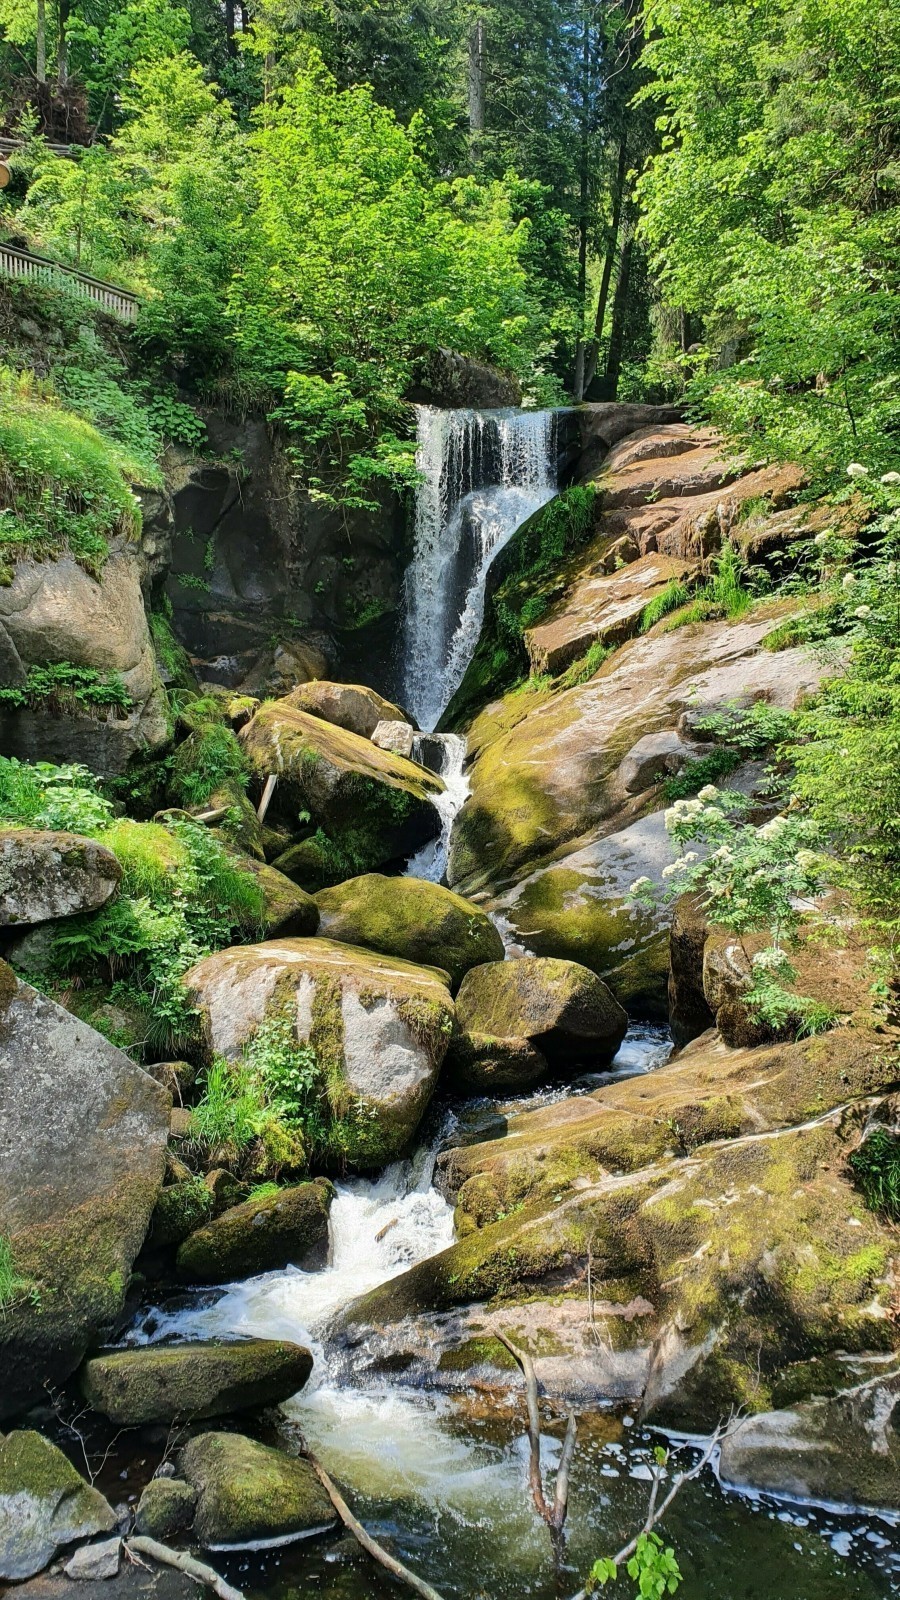 Die Triberger Wasserfälle erstrecken sich über mehrere Fallstufen und sind die höchsten Wasserfälle Deutschlands.